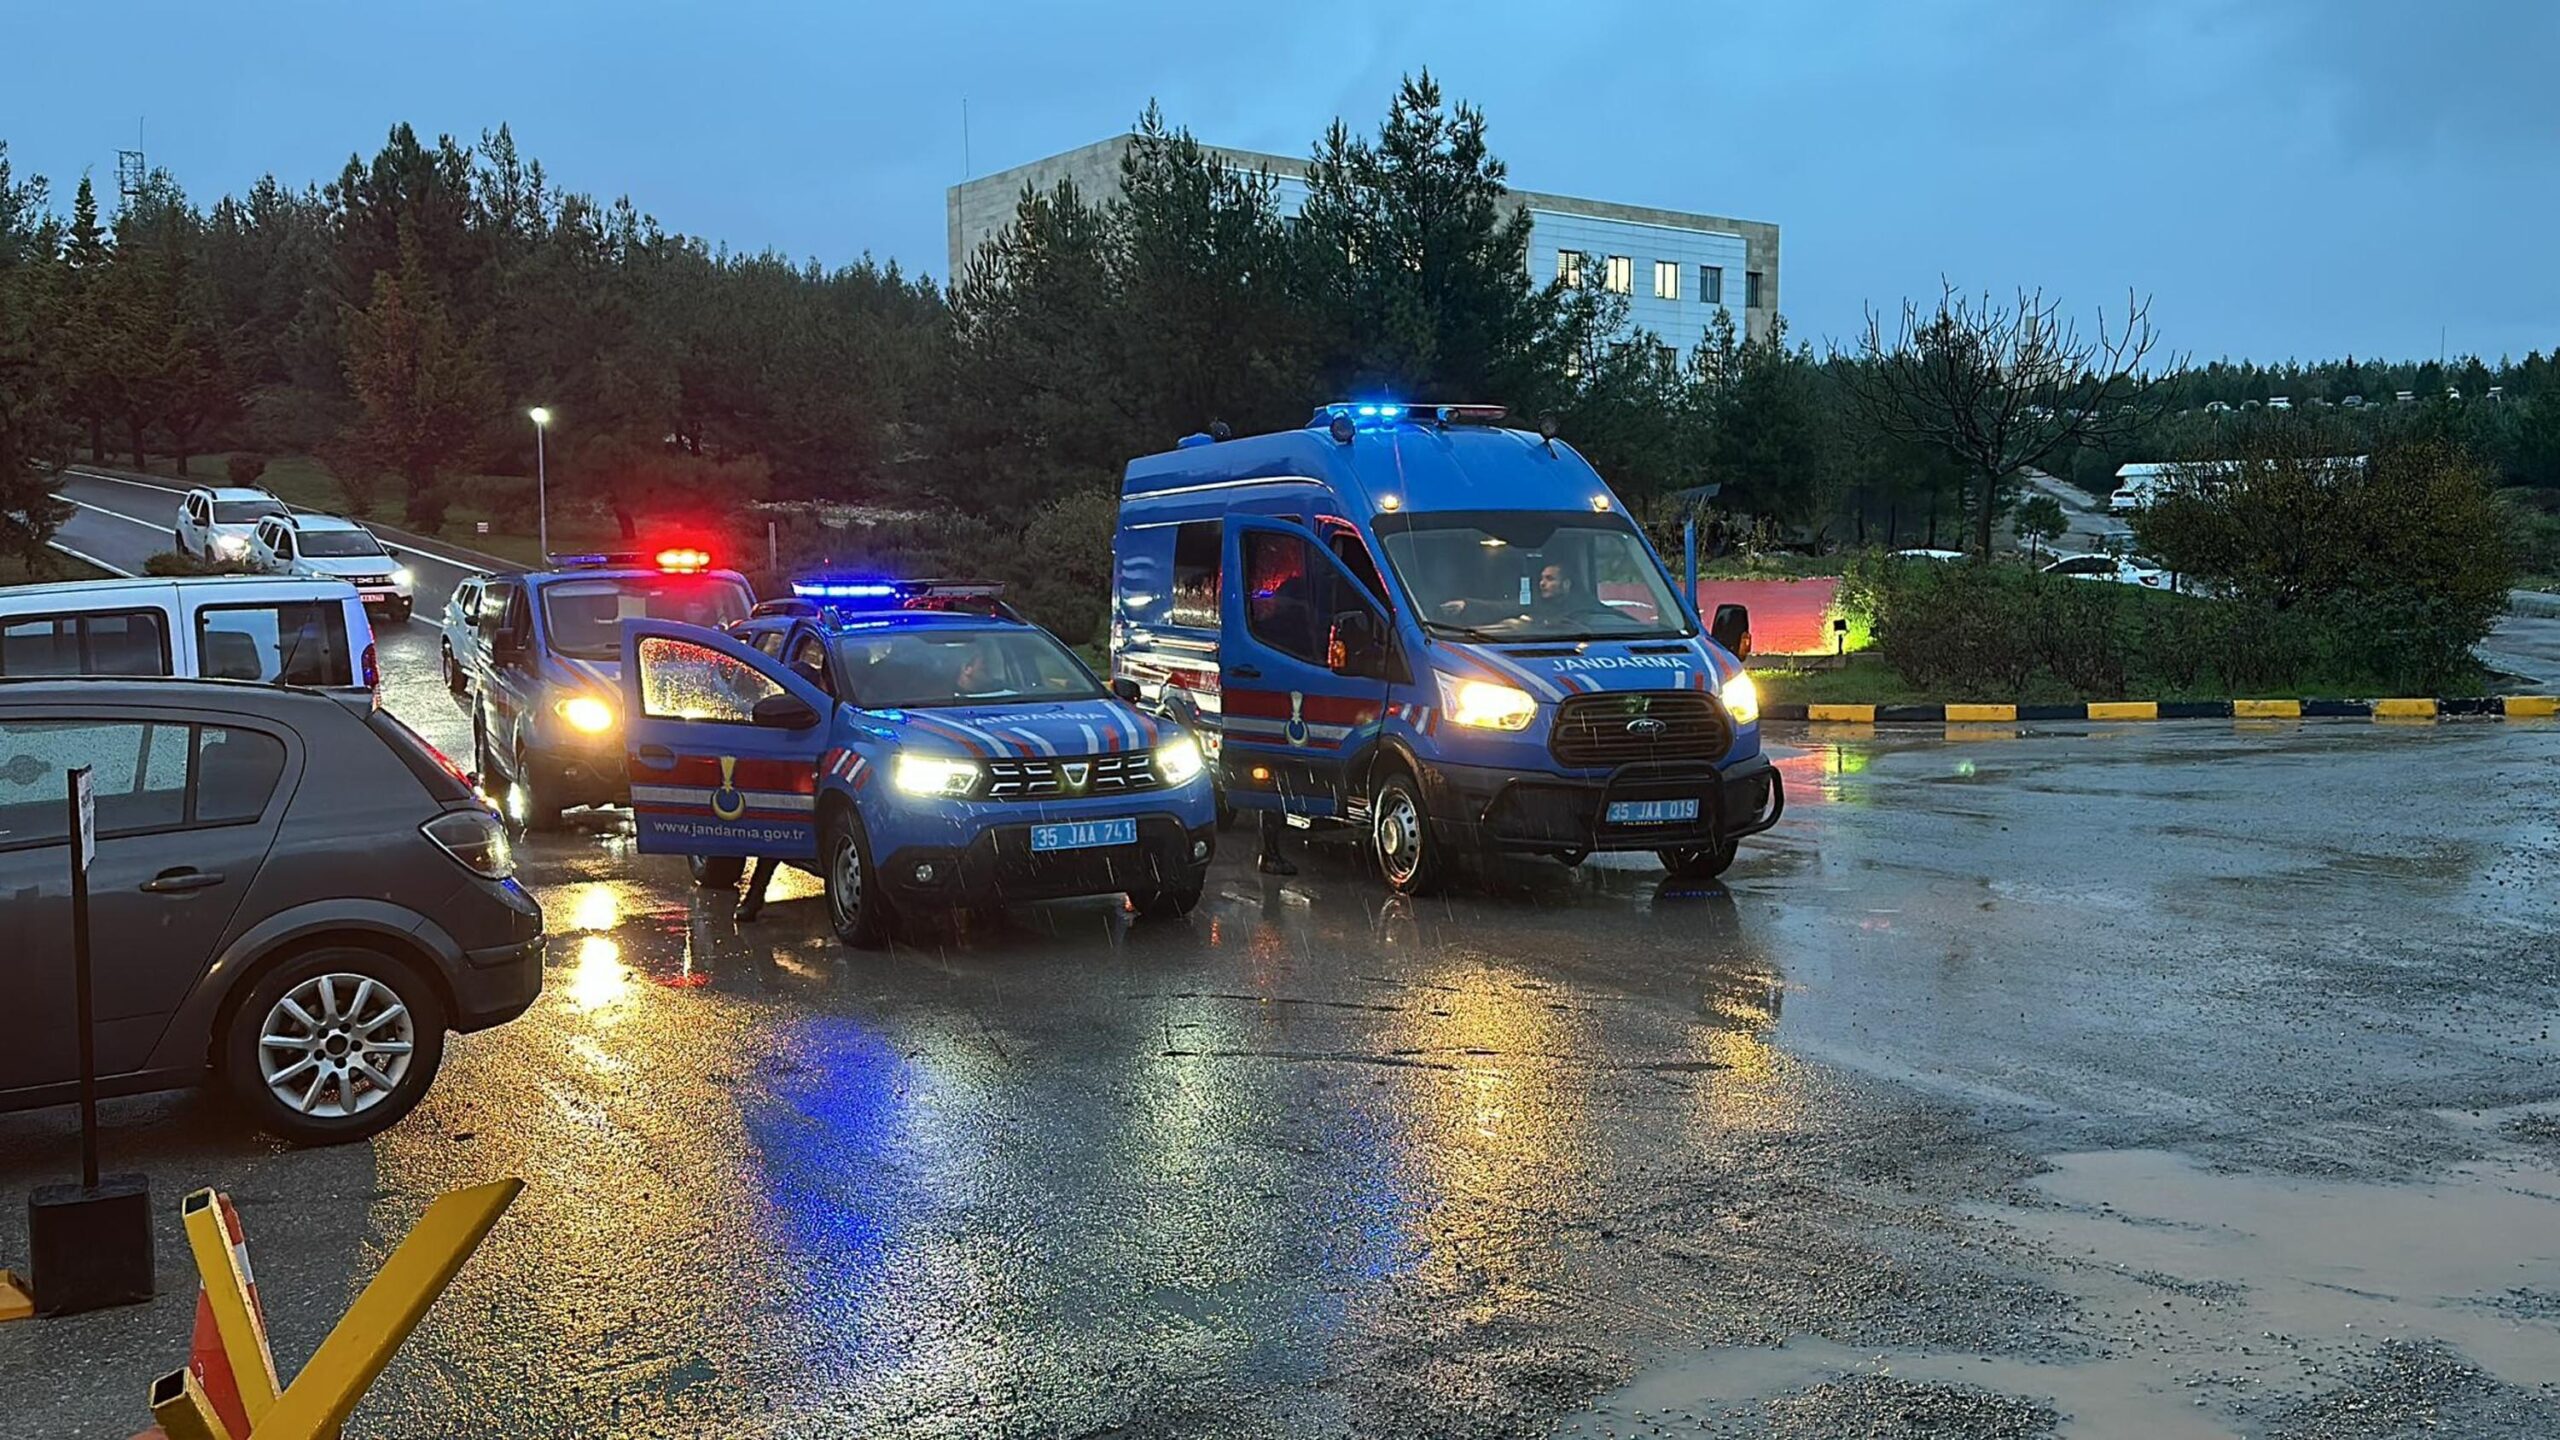 İzmir merkezli olarak gerçekleştirilen DEAŞ operasyonu, 12 ilde düzenlenmiş ve bu operasyon sonucunda 15 kişi gözaltına alınmıştır.